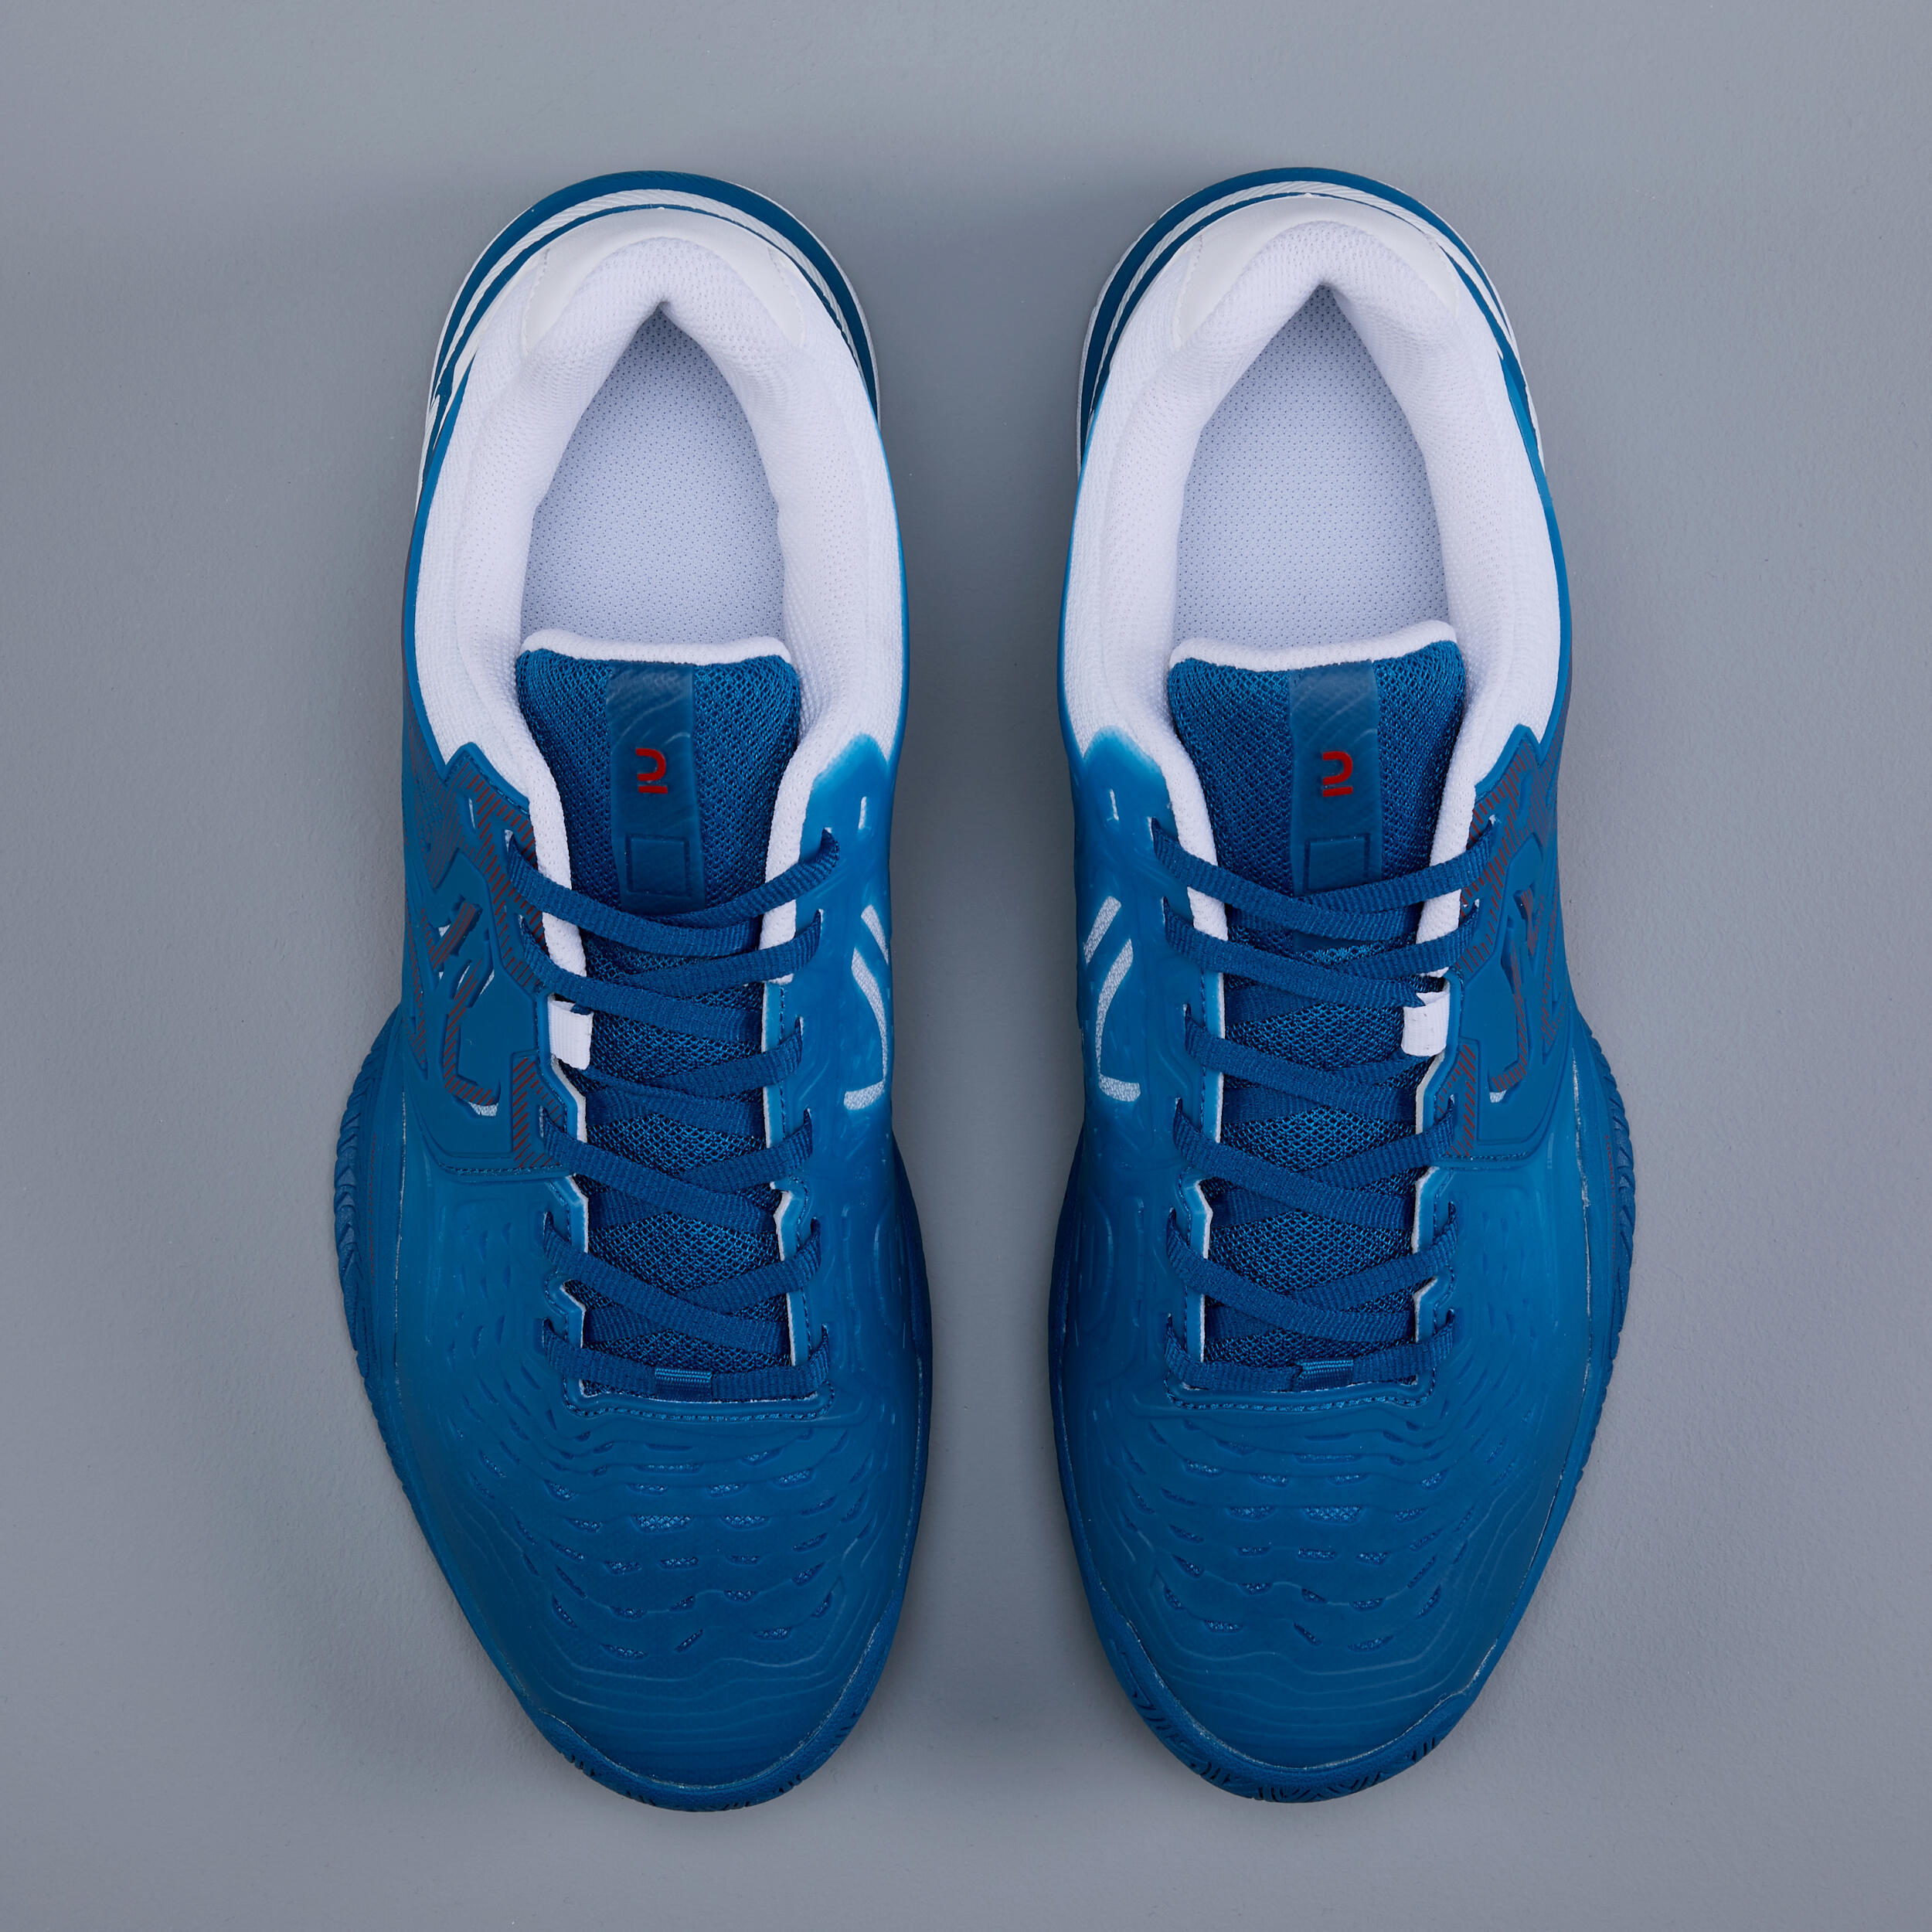 Men's Multi-Court Tennis Shoes TS560 - Blue 6/6